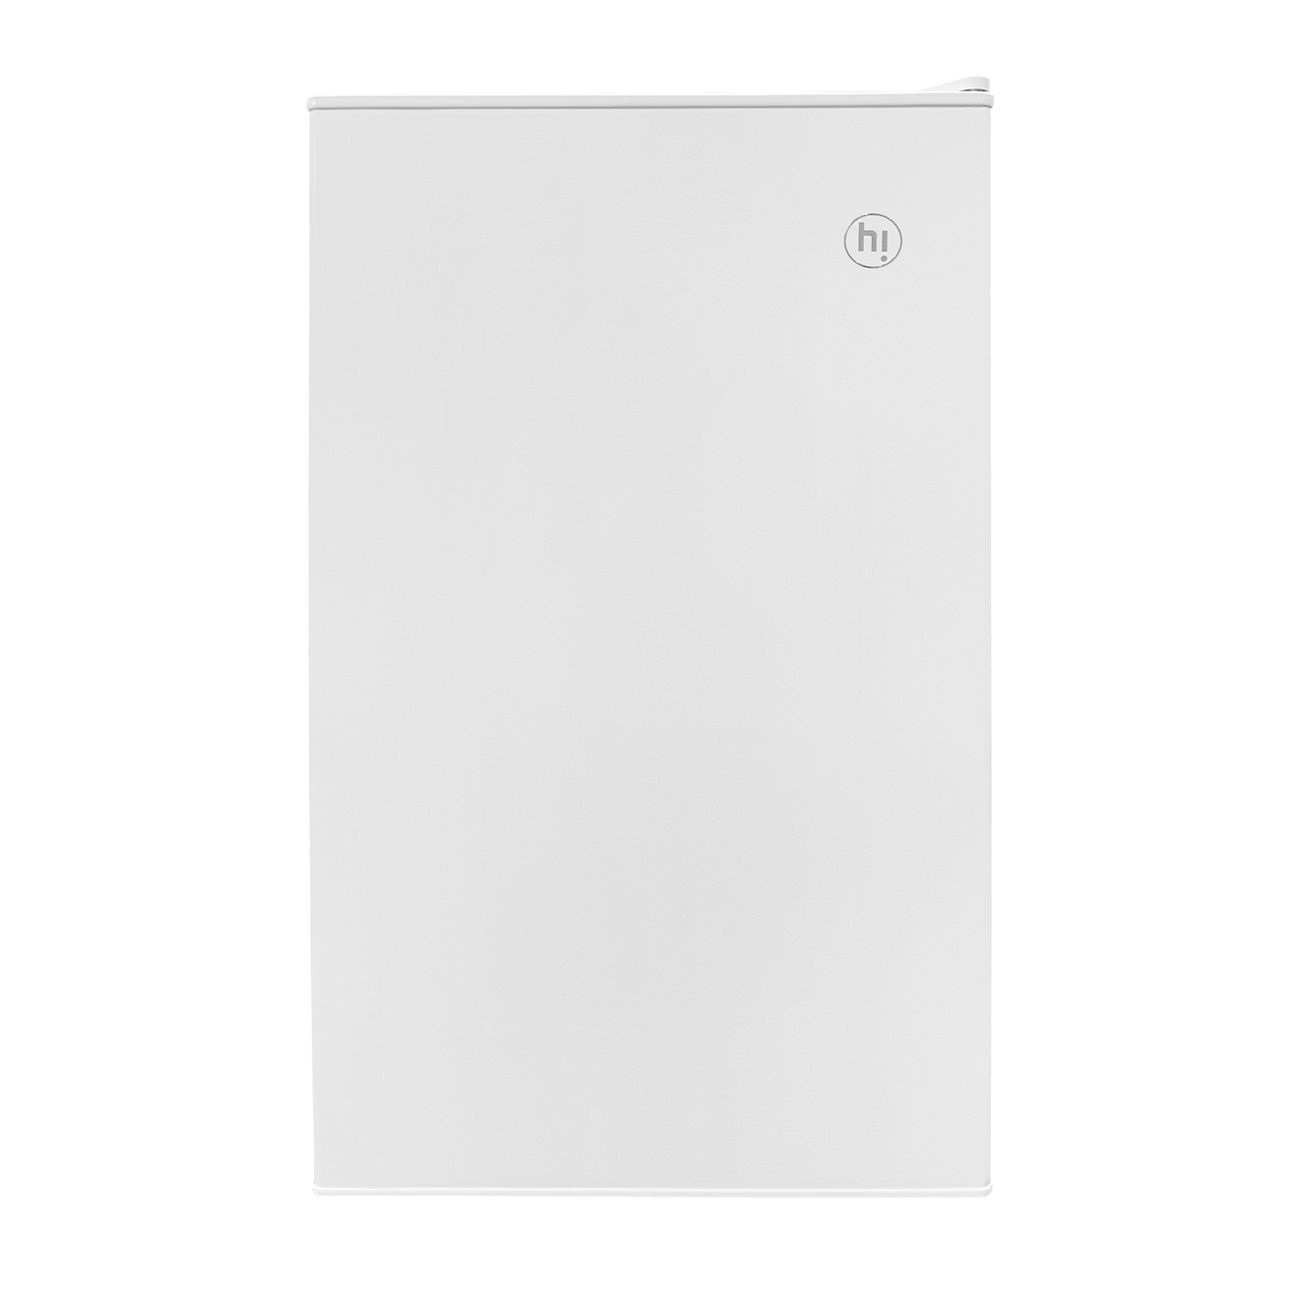 Холодильник Hi HODN085045RW белый - купить в М.видео, цена на Мегамаркет